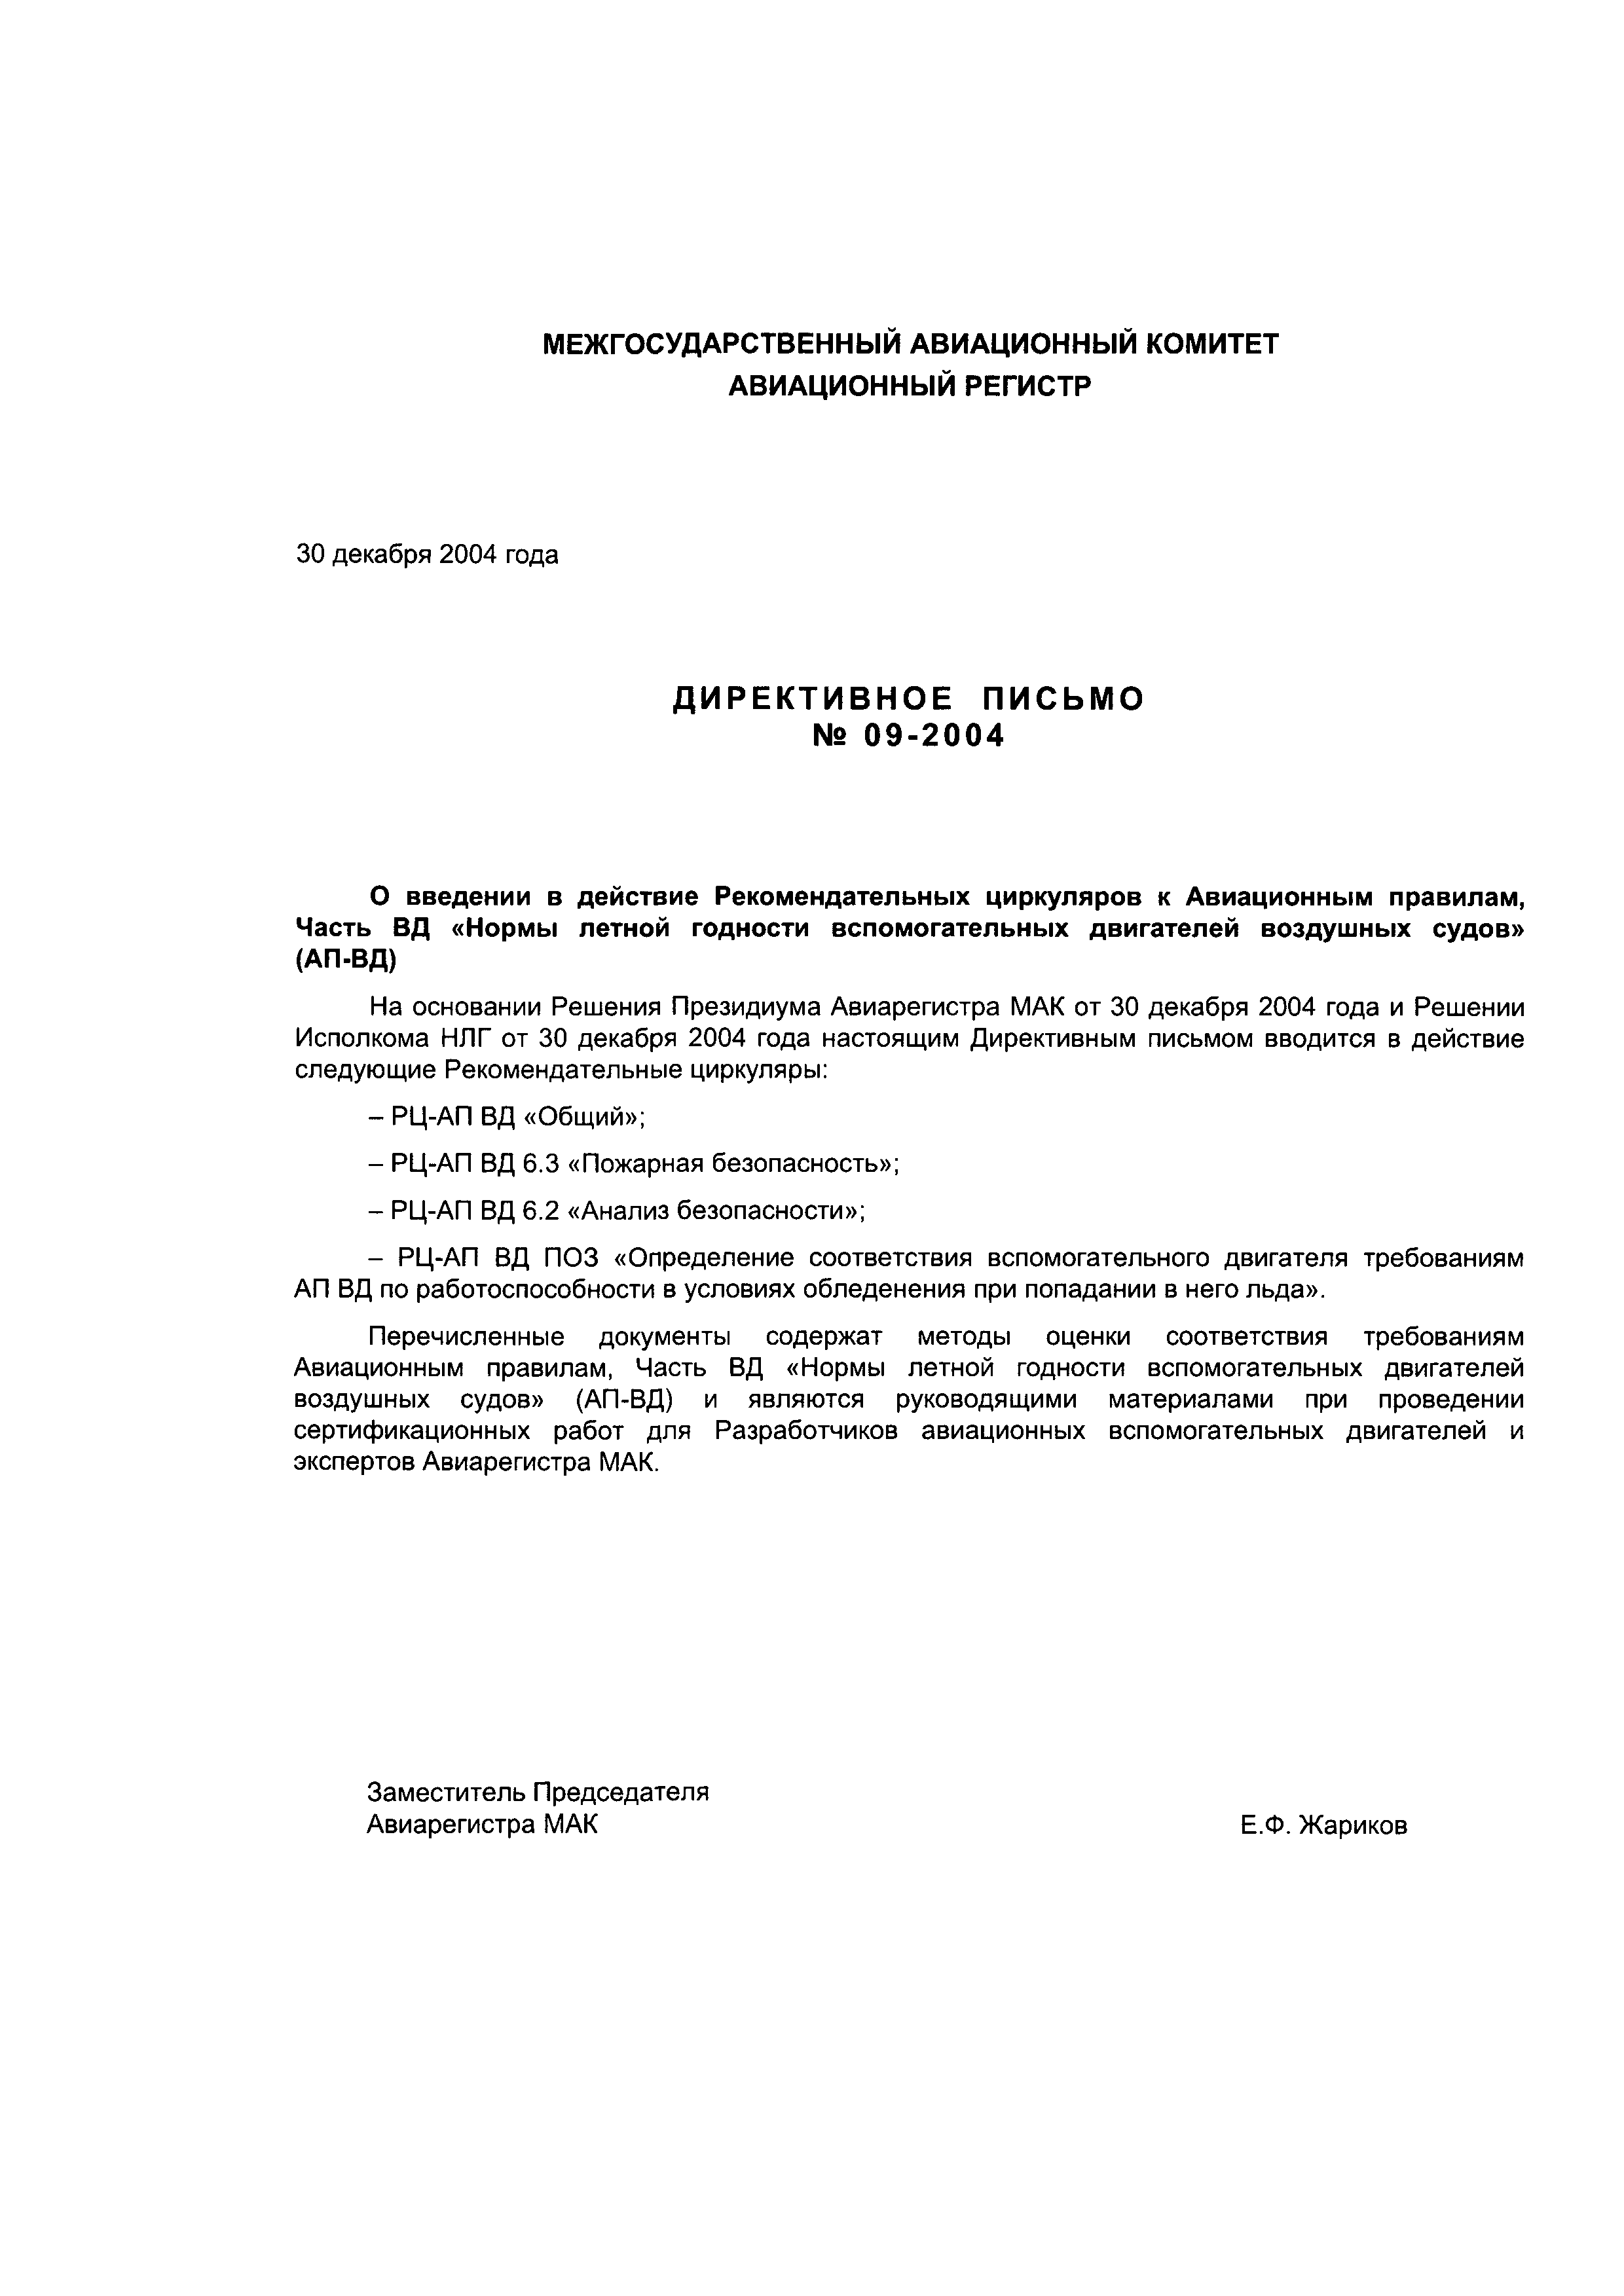 Директивное письмо 09-2004